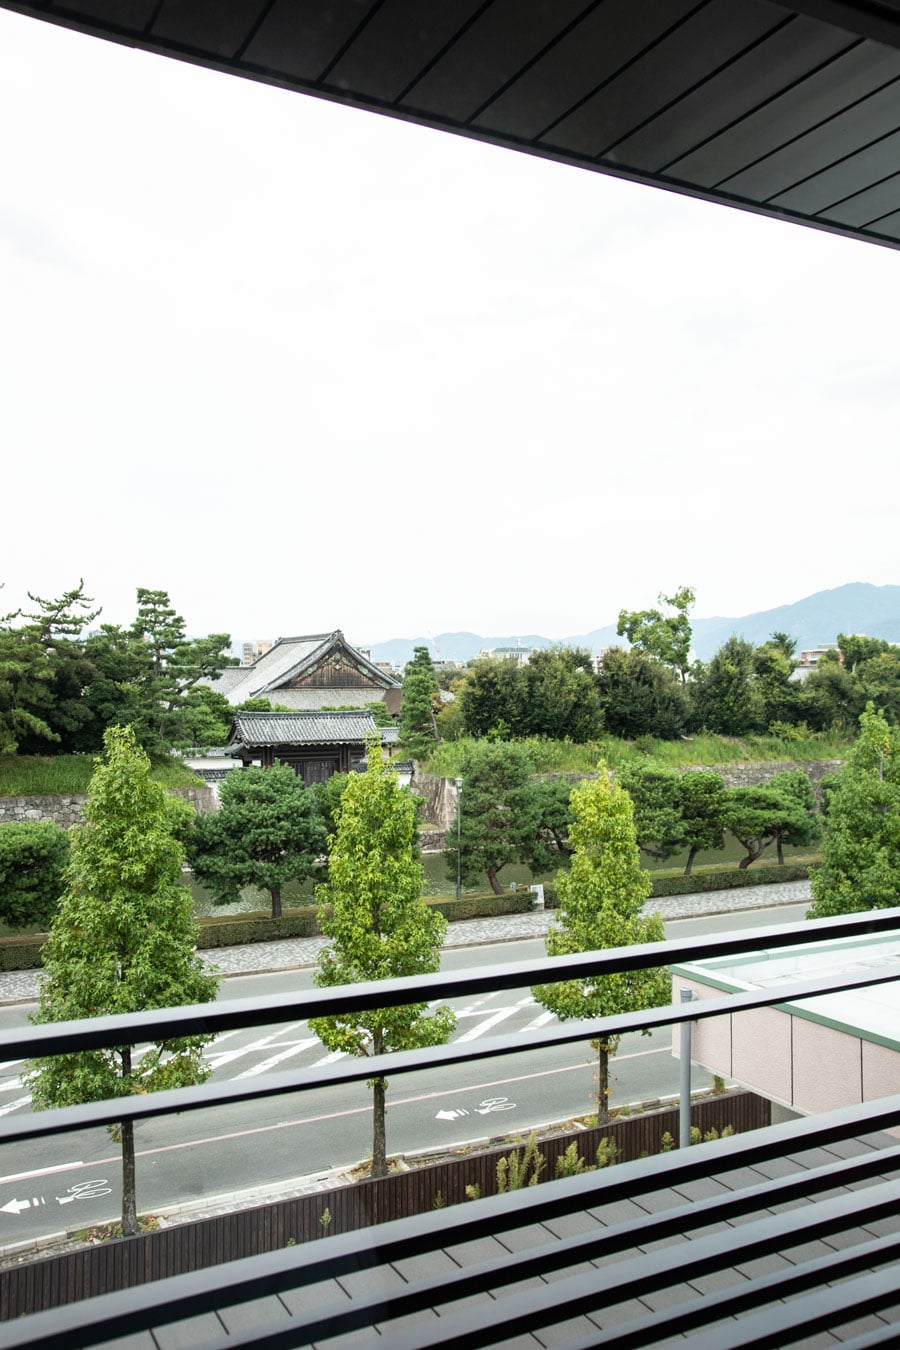 ギャリア・二条城 京都の客室には、“二条城ビュー” のタイプも。